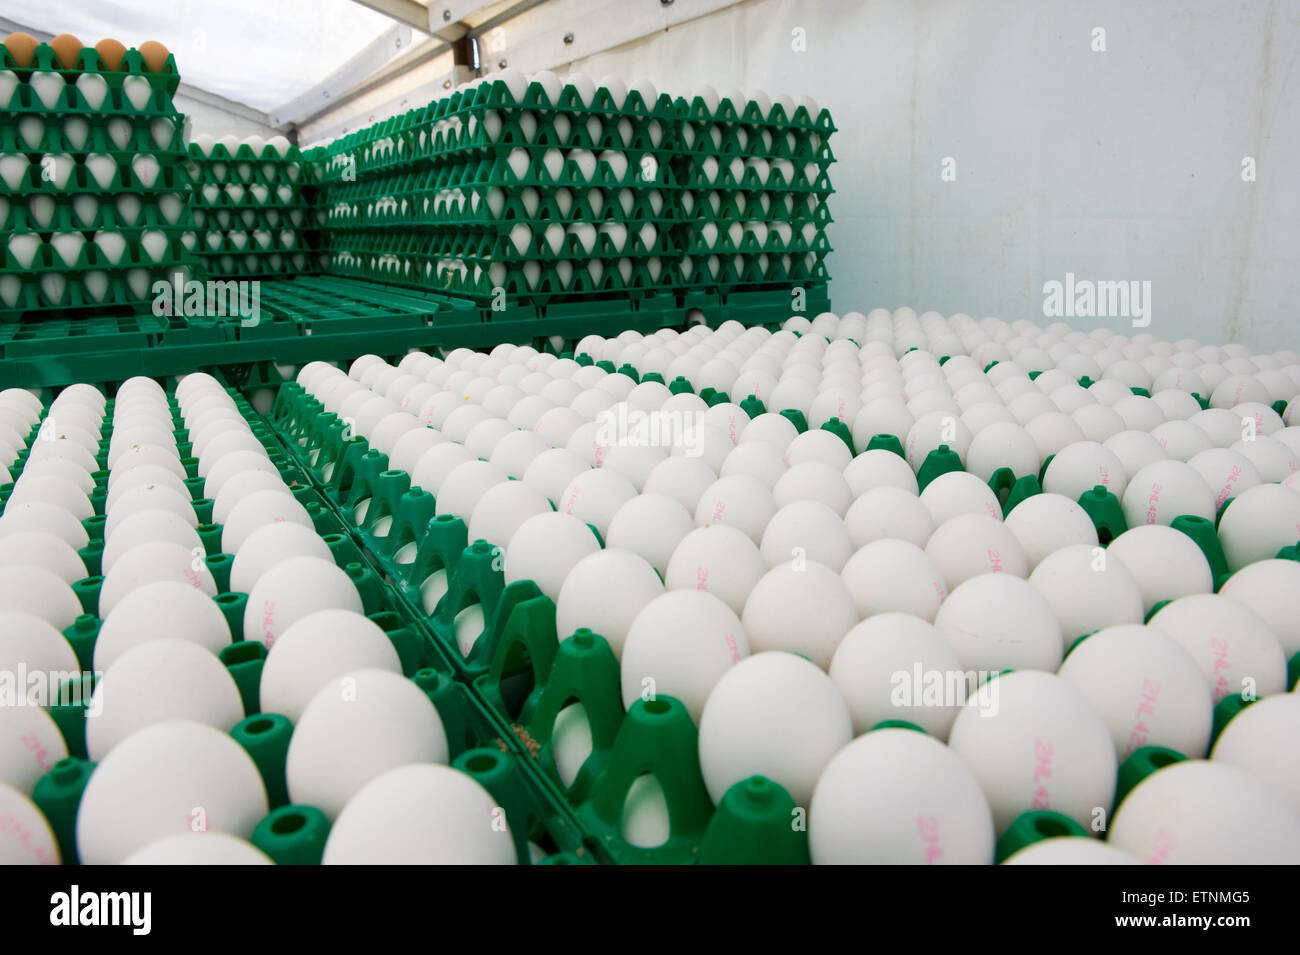 Oeufs blancs dans des caisses en plastique vert prêt à être transportés à partir d'un élevage de poulets Banque D'Images